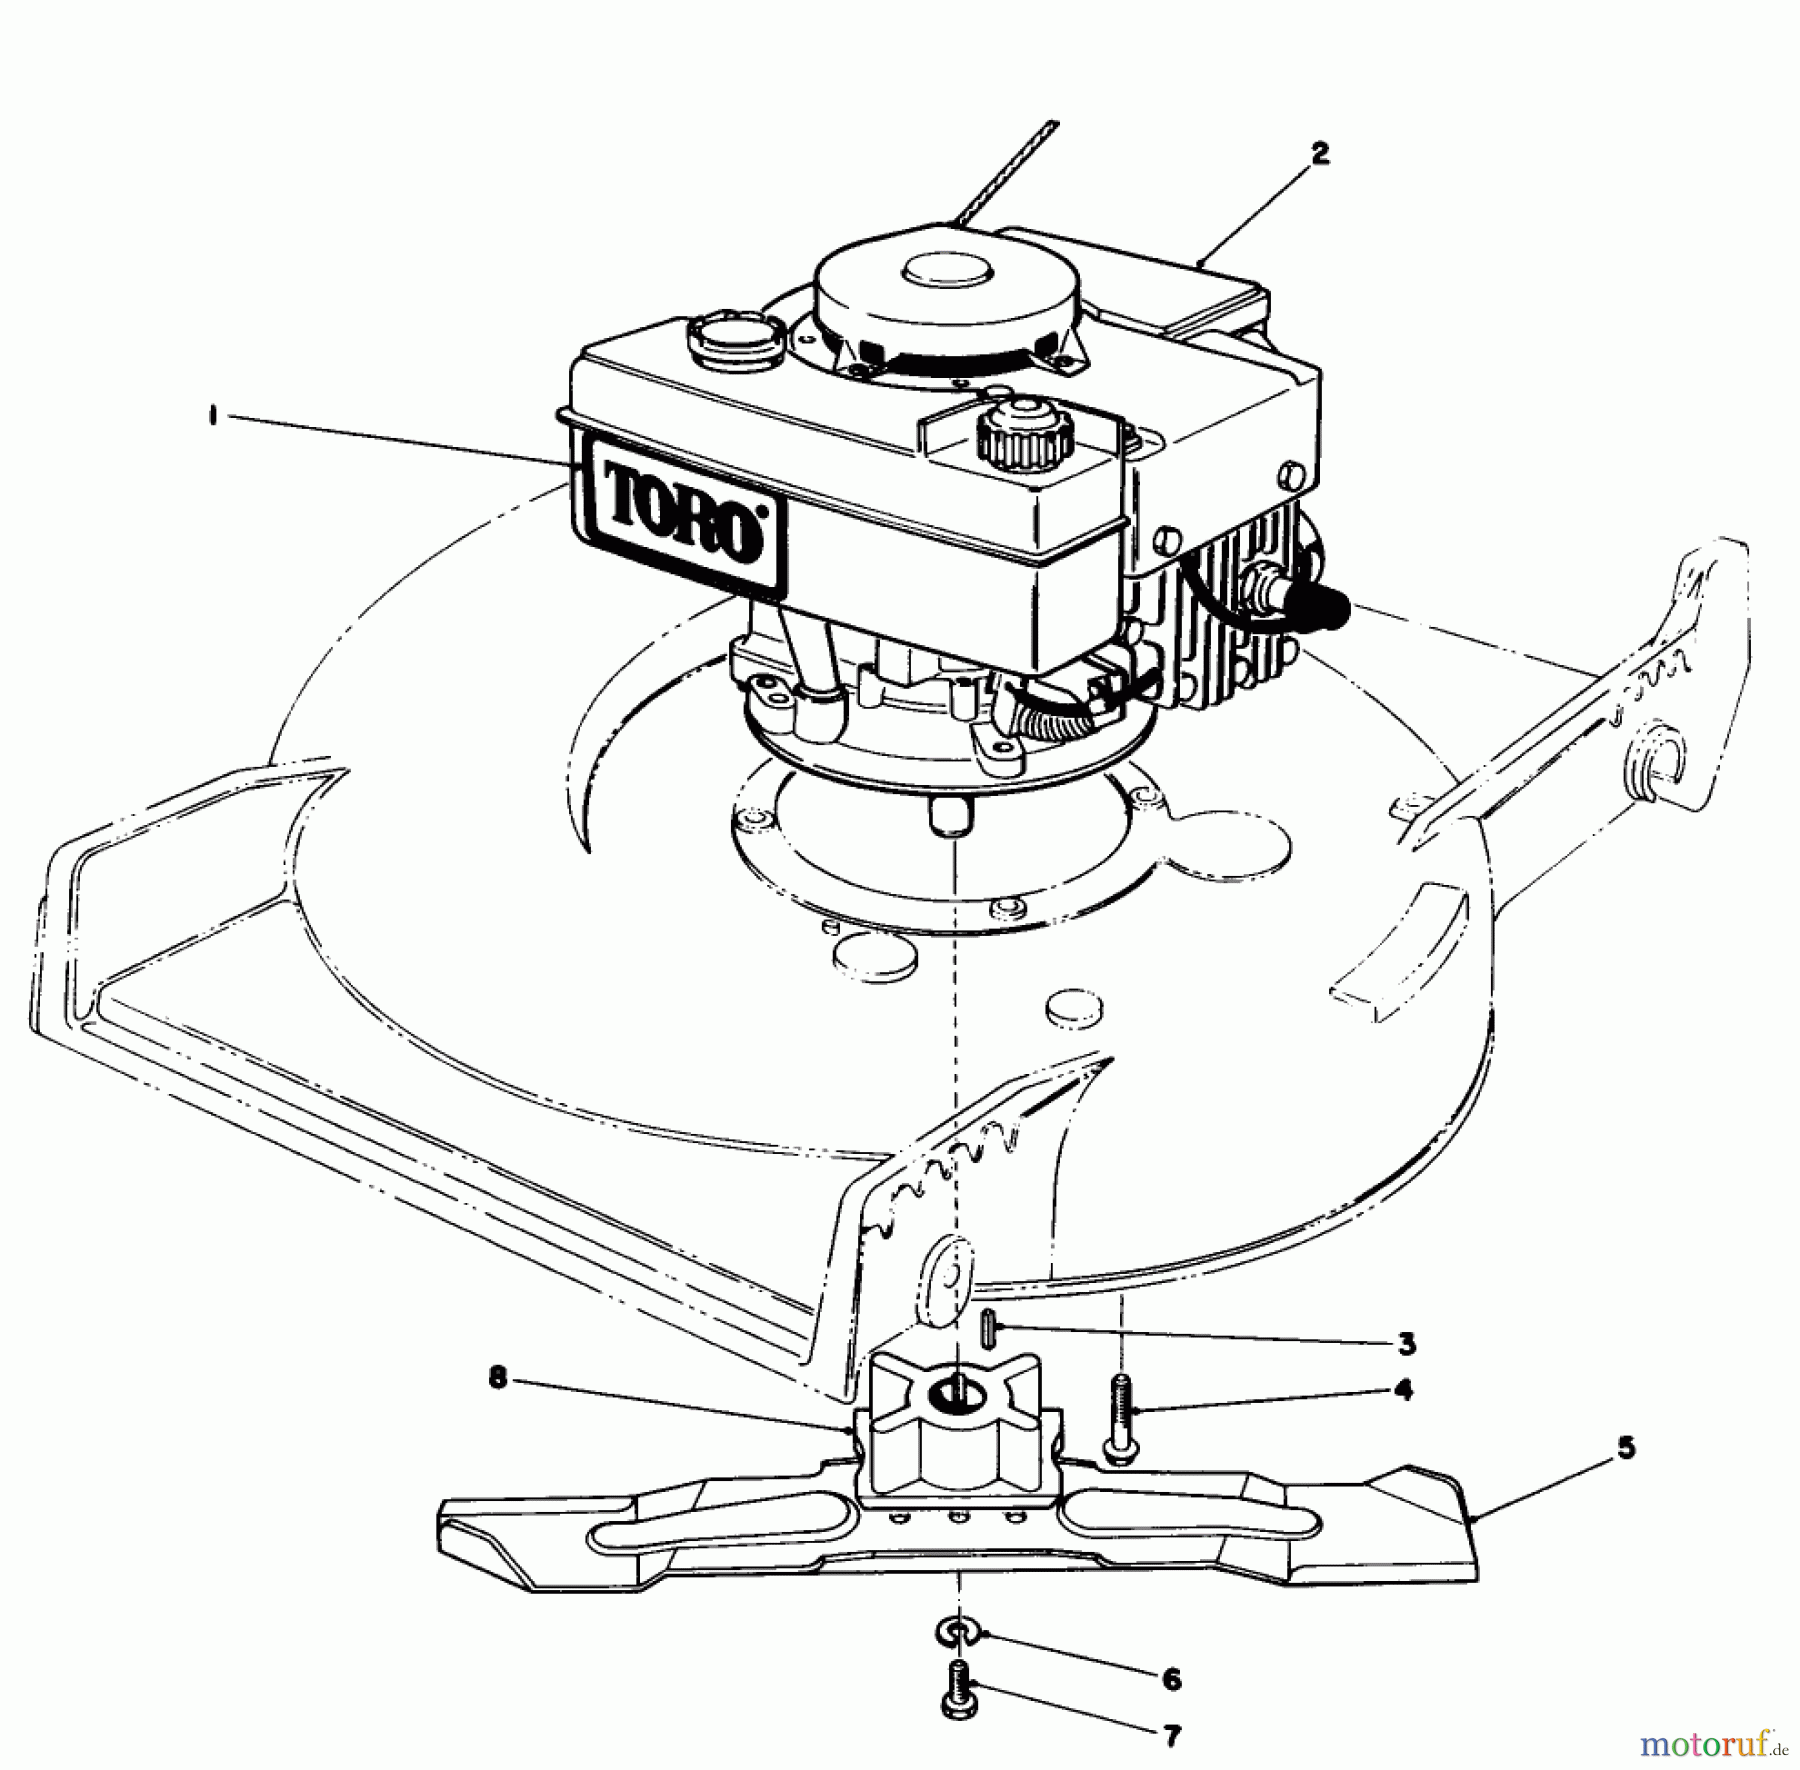  Toro Neu Mowers, Walk-Behind Seite 1 20588 - Toro Lawnmower, 1986 (6000001-6999999) ENGINE ASSEMBLY